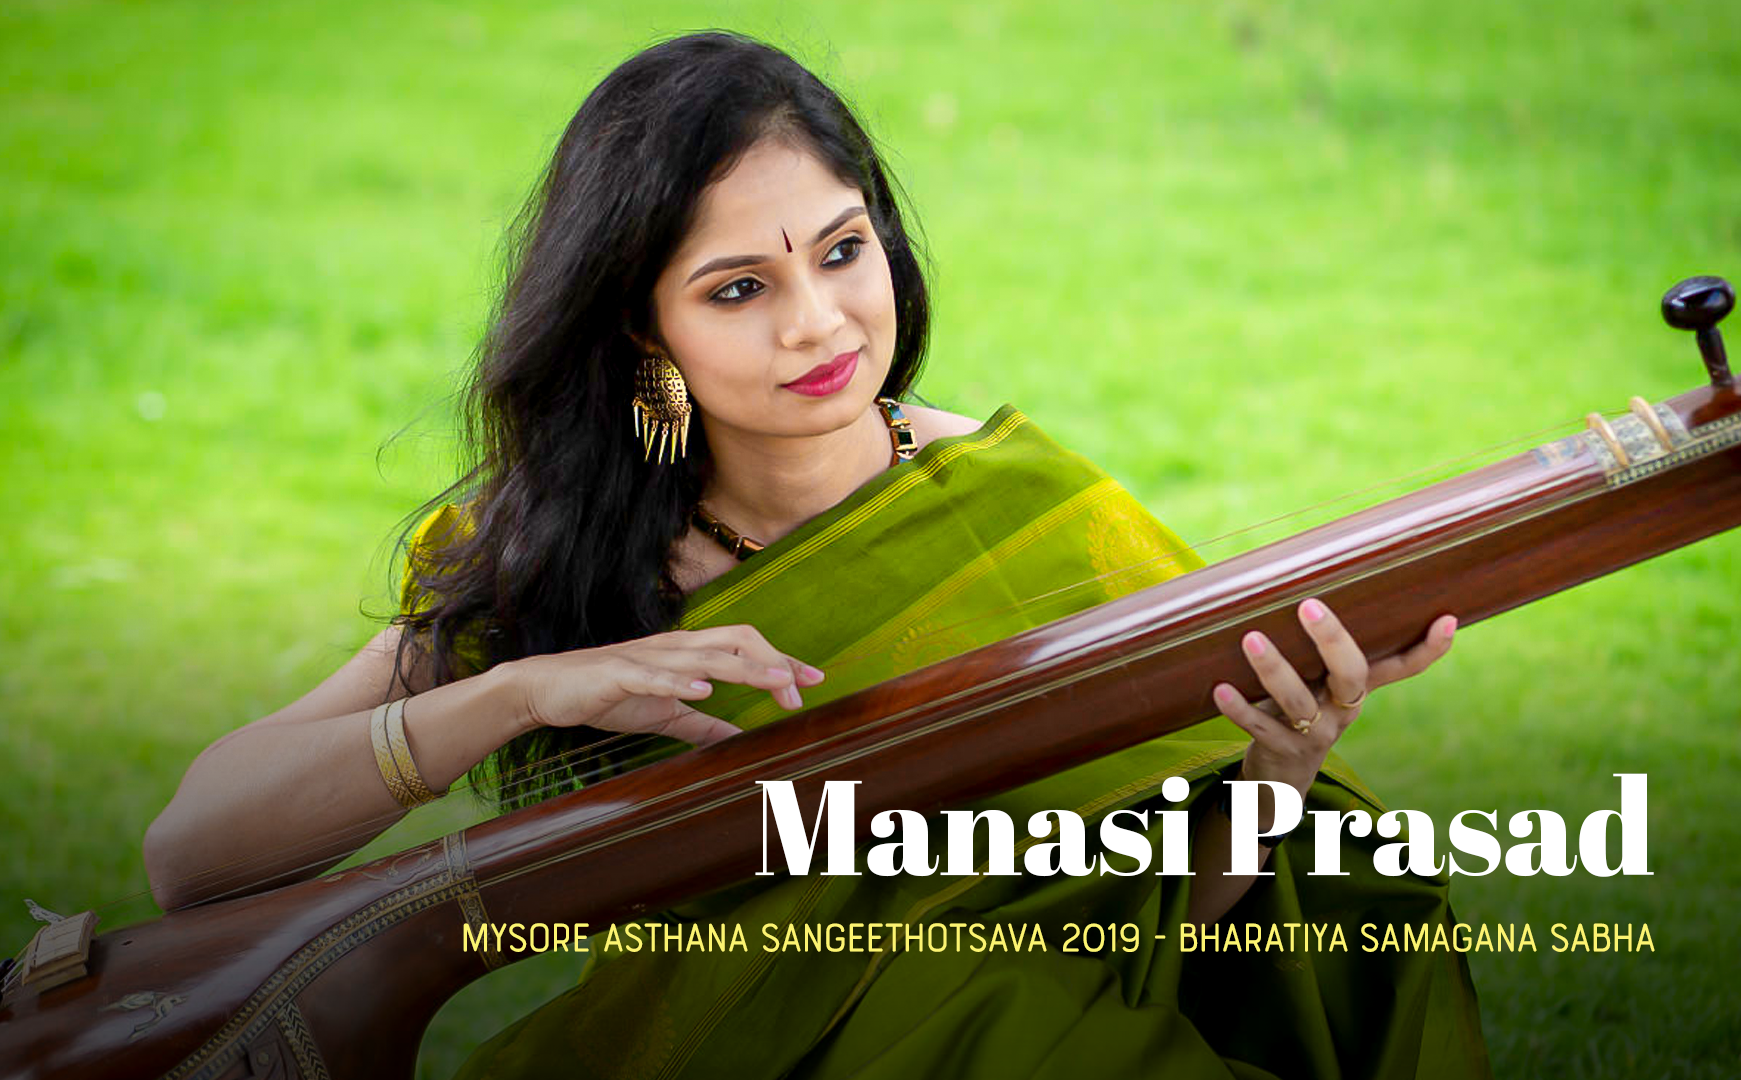 Manasi Prasad - Mysore Asthana Sangeethotsava 2019 - Bharatiya Samagana Sabha